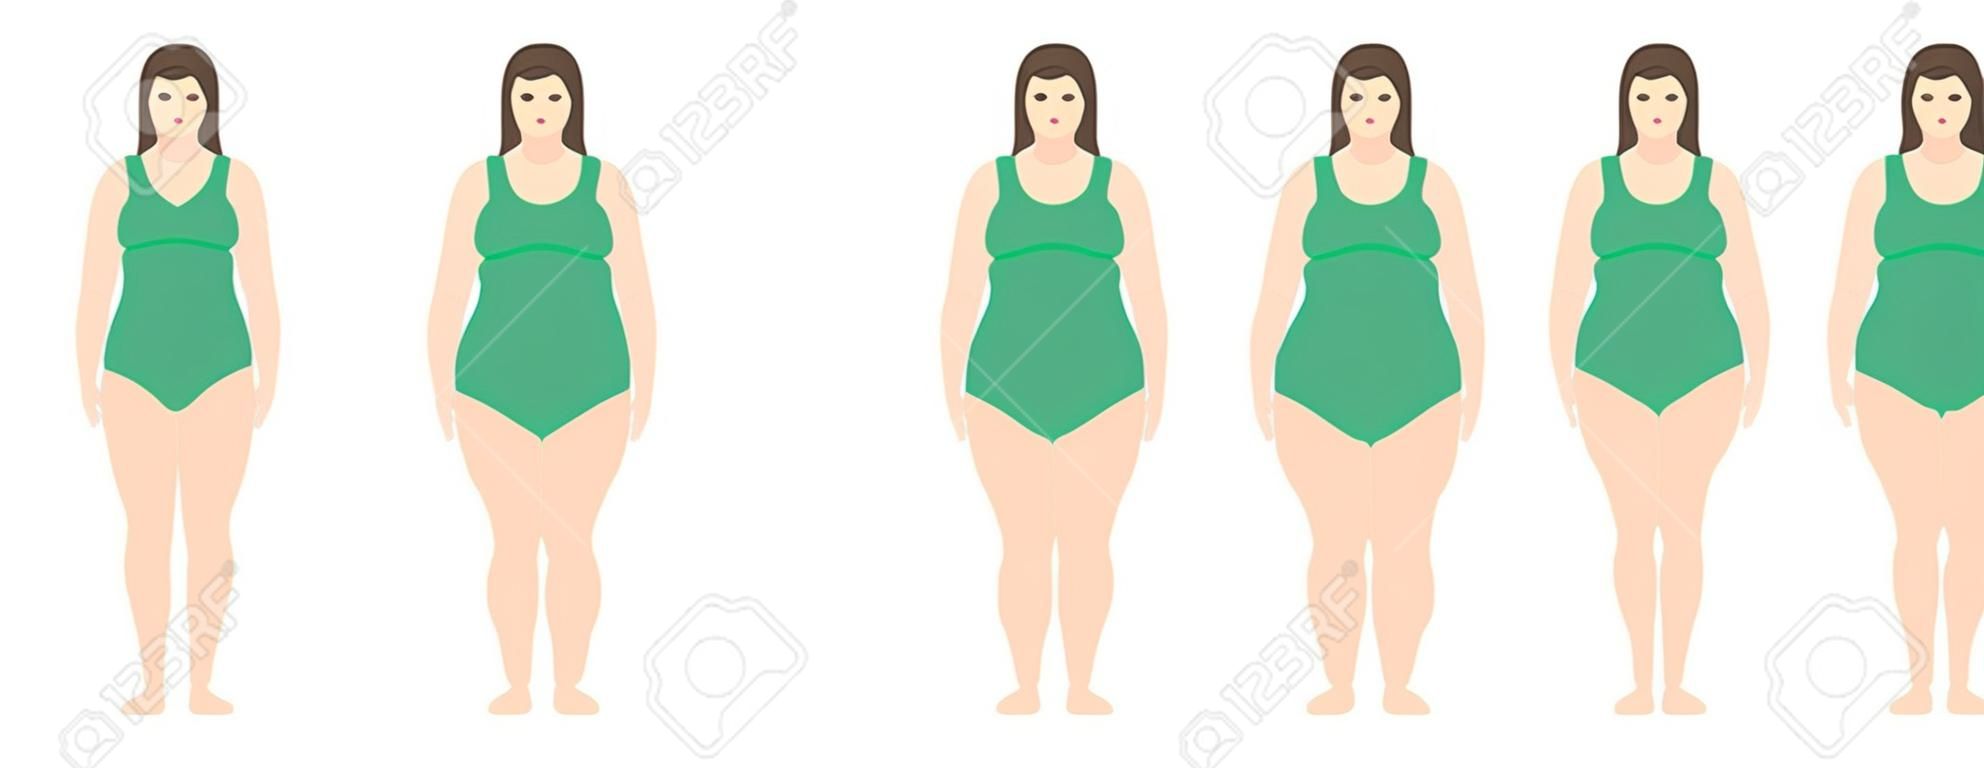 Векторная иллюстрация женщин с разным весом от анорексии до очень ожирения. Индекс массы тела, концепция потери веса.